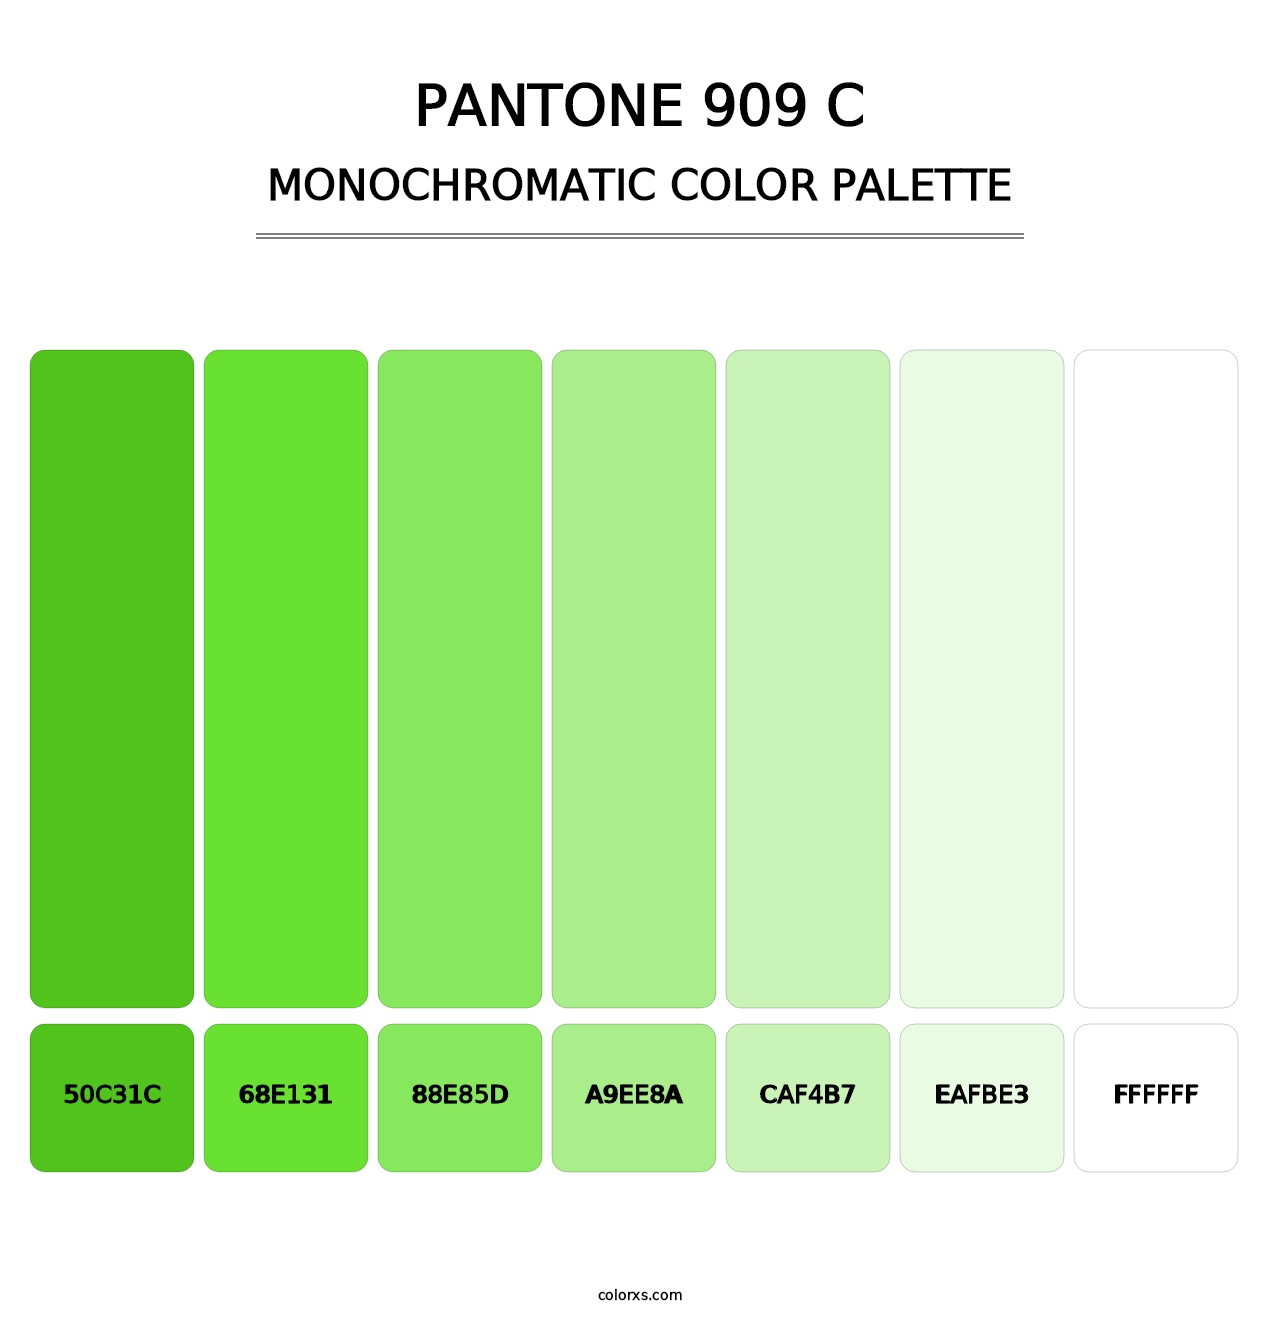 PANTONE 909 C - Monochromatic Color Palette